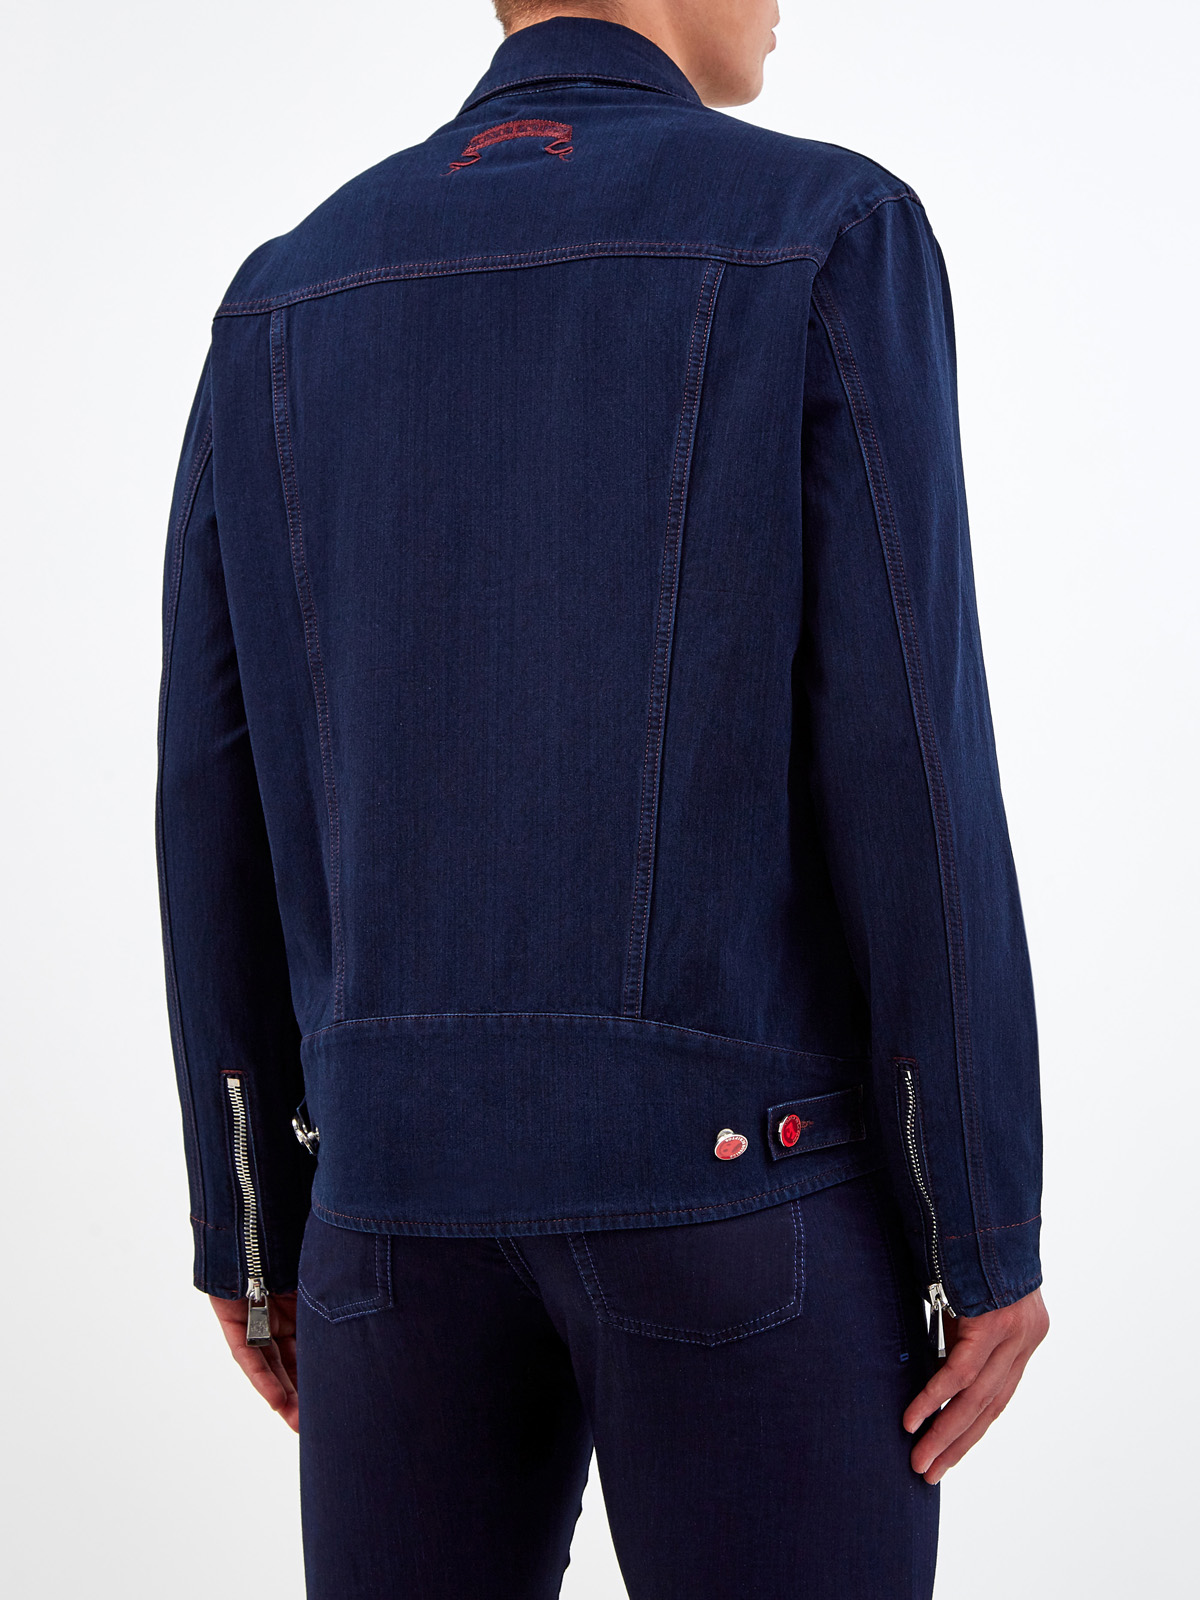 Куртка Decio ручной работы с вышитым логотипом бренда SCISSOR SCRIPTOR, цвет синий, размер 54;56;50 - фото 4